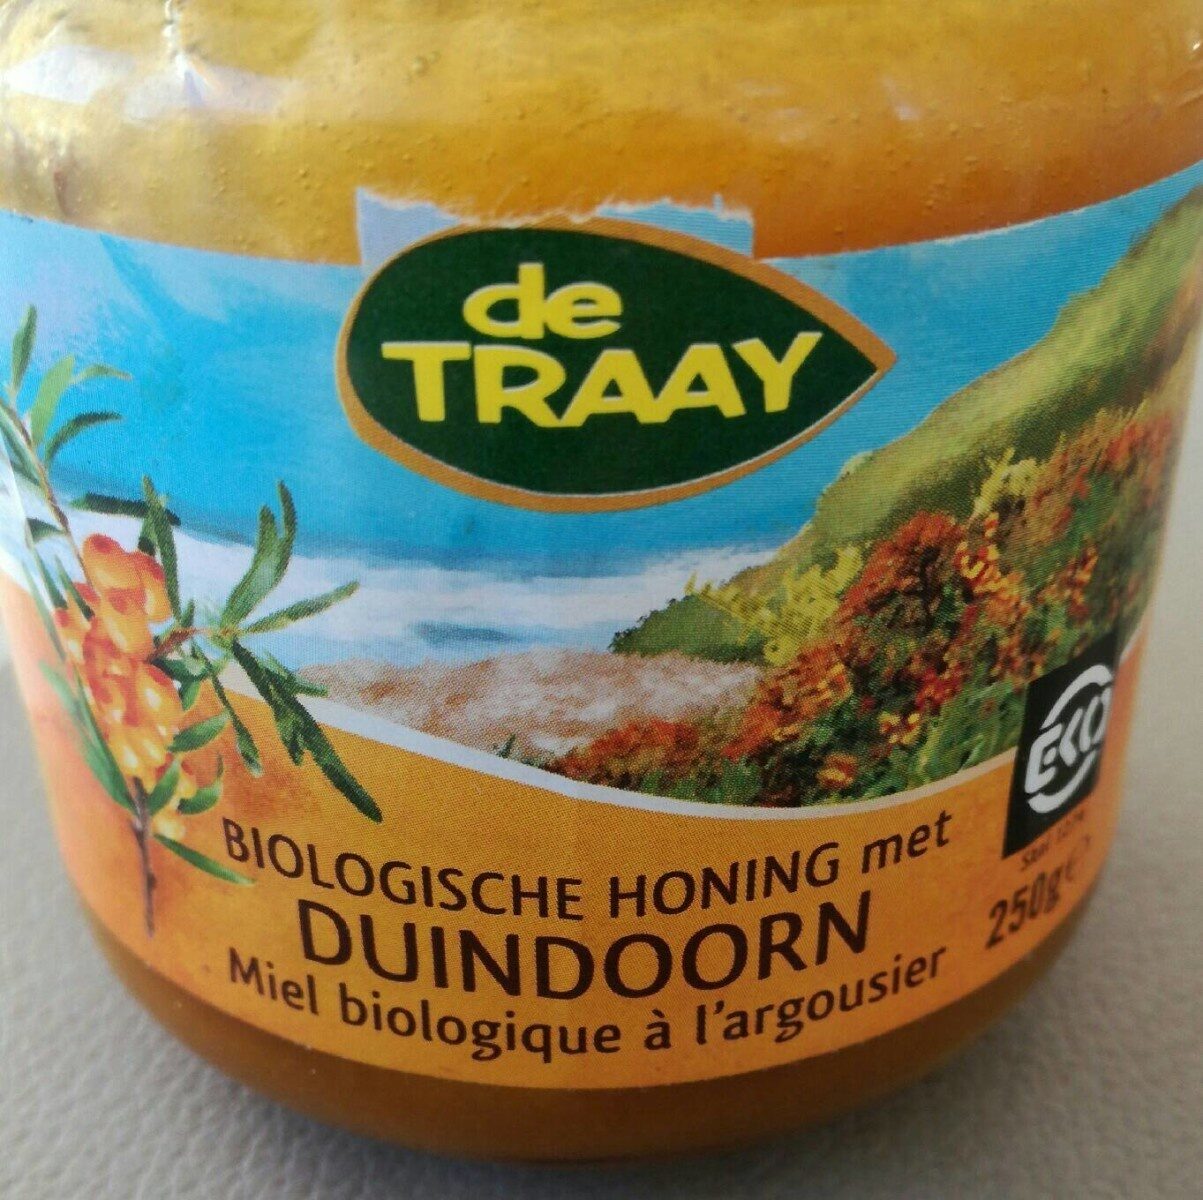 Biologische honing met duindoorn - Product - fr